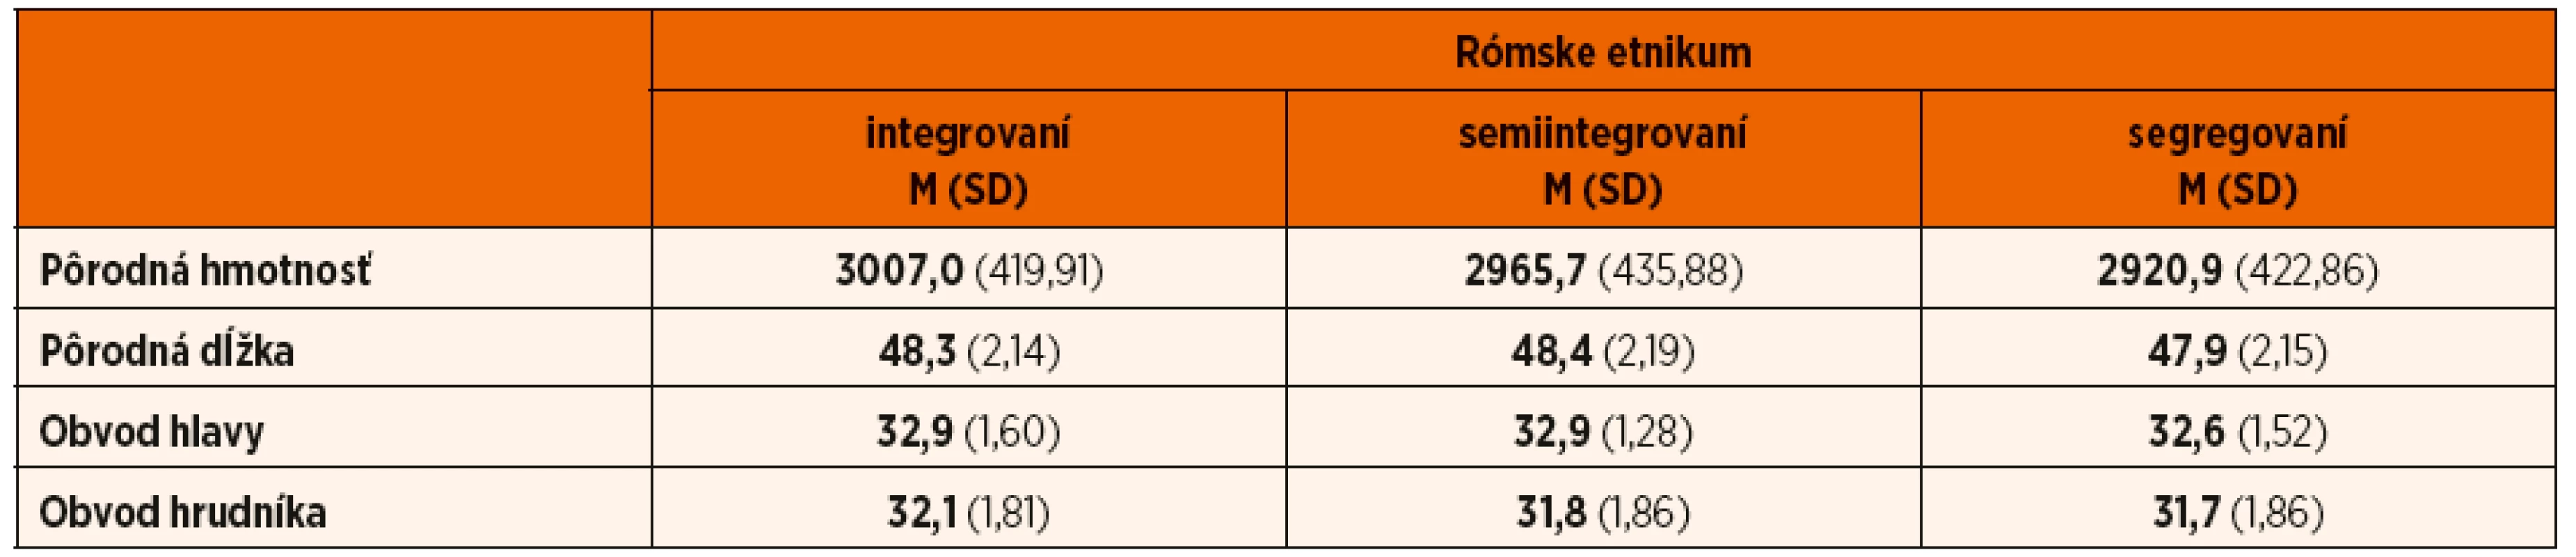 Antropometrické parametre novorodencov rómskeho etnika s ohľadom na stupeň ich integrácie.